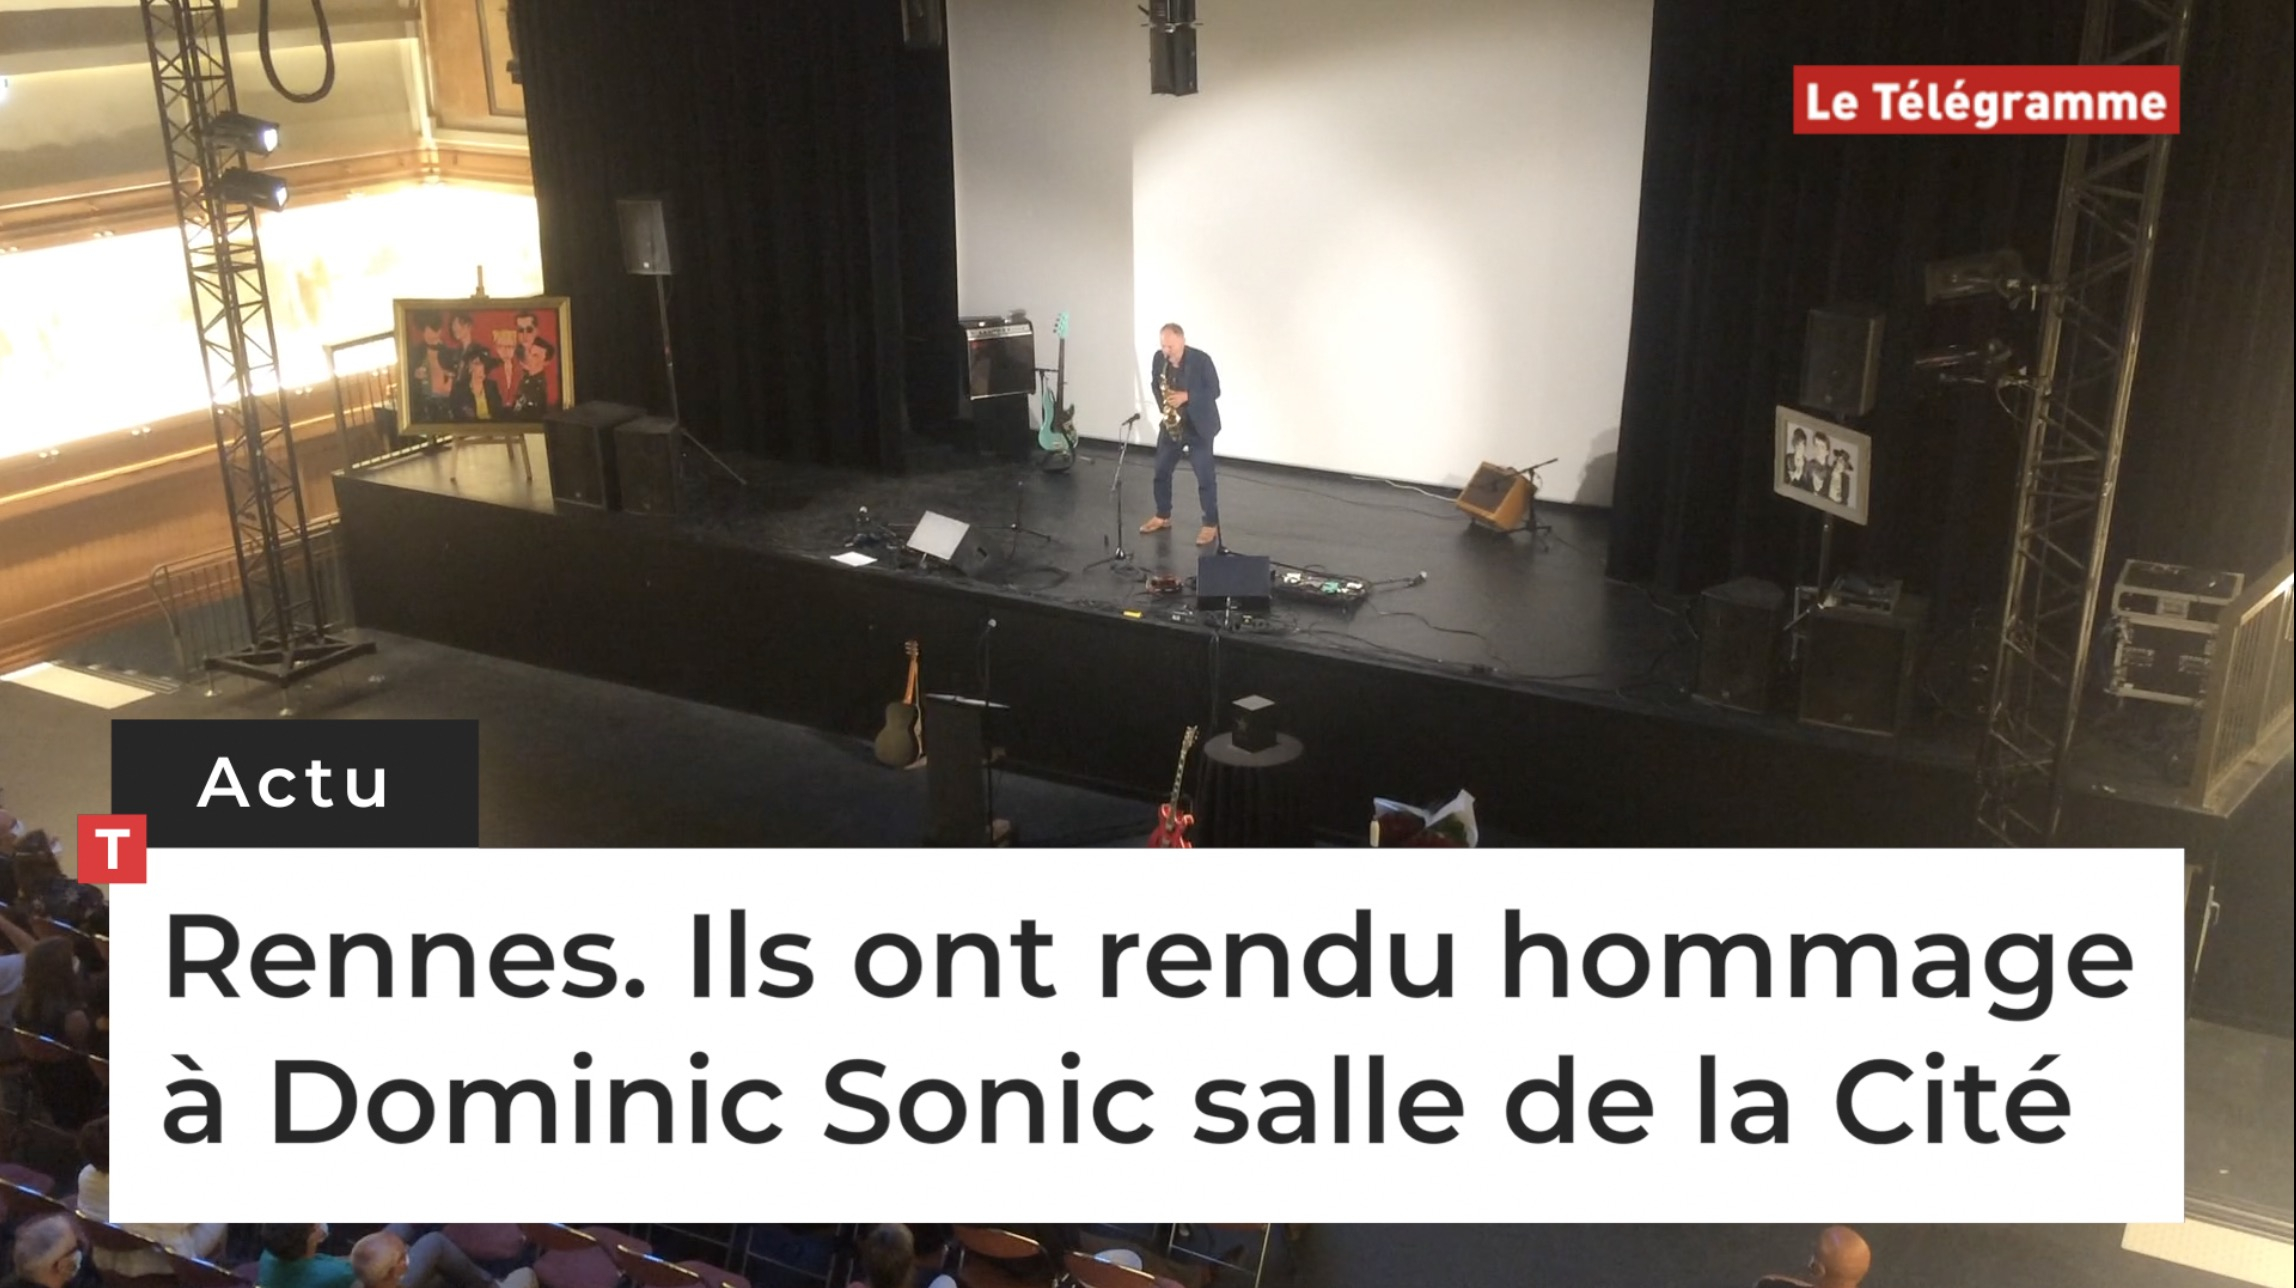 Rennes. Ils ont rendu hommage à Dominic Sonic salle de la Cité (Le Télégramme)